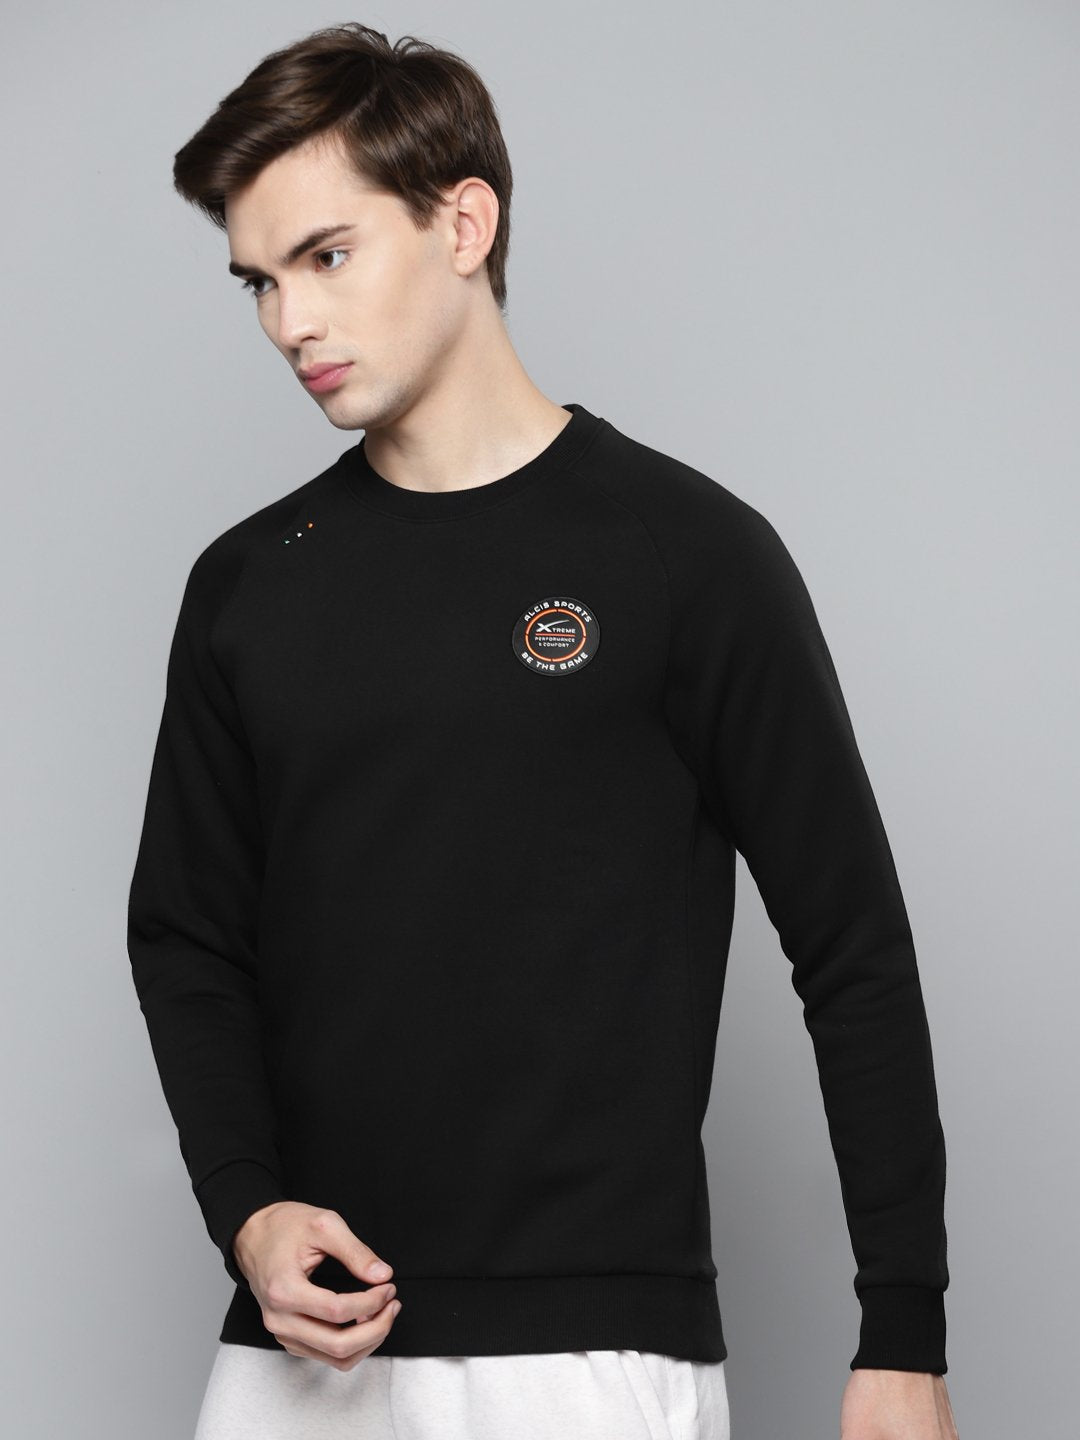 Alcis Men Black Solid Cotton Sweatshirt